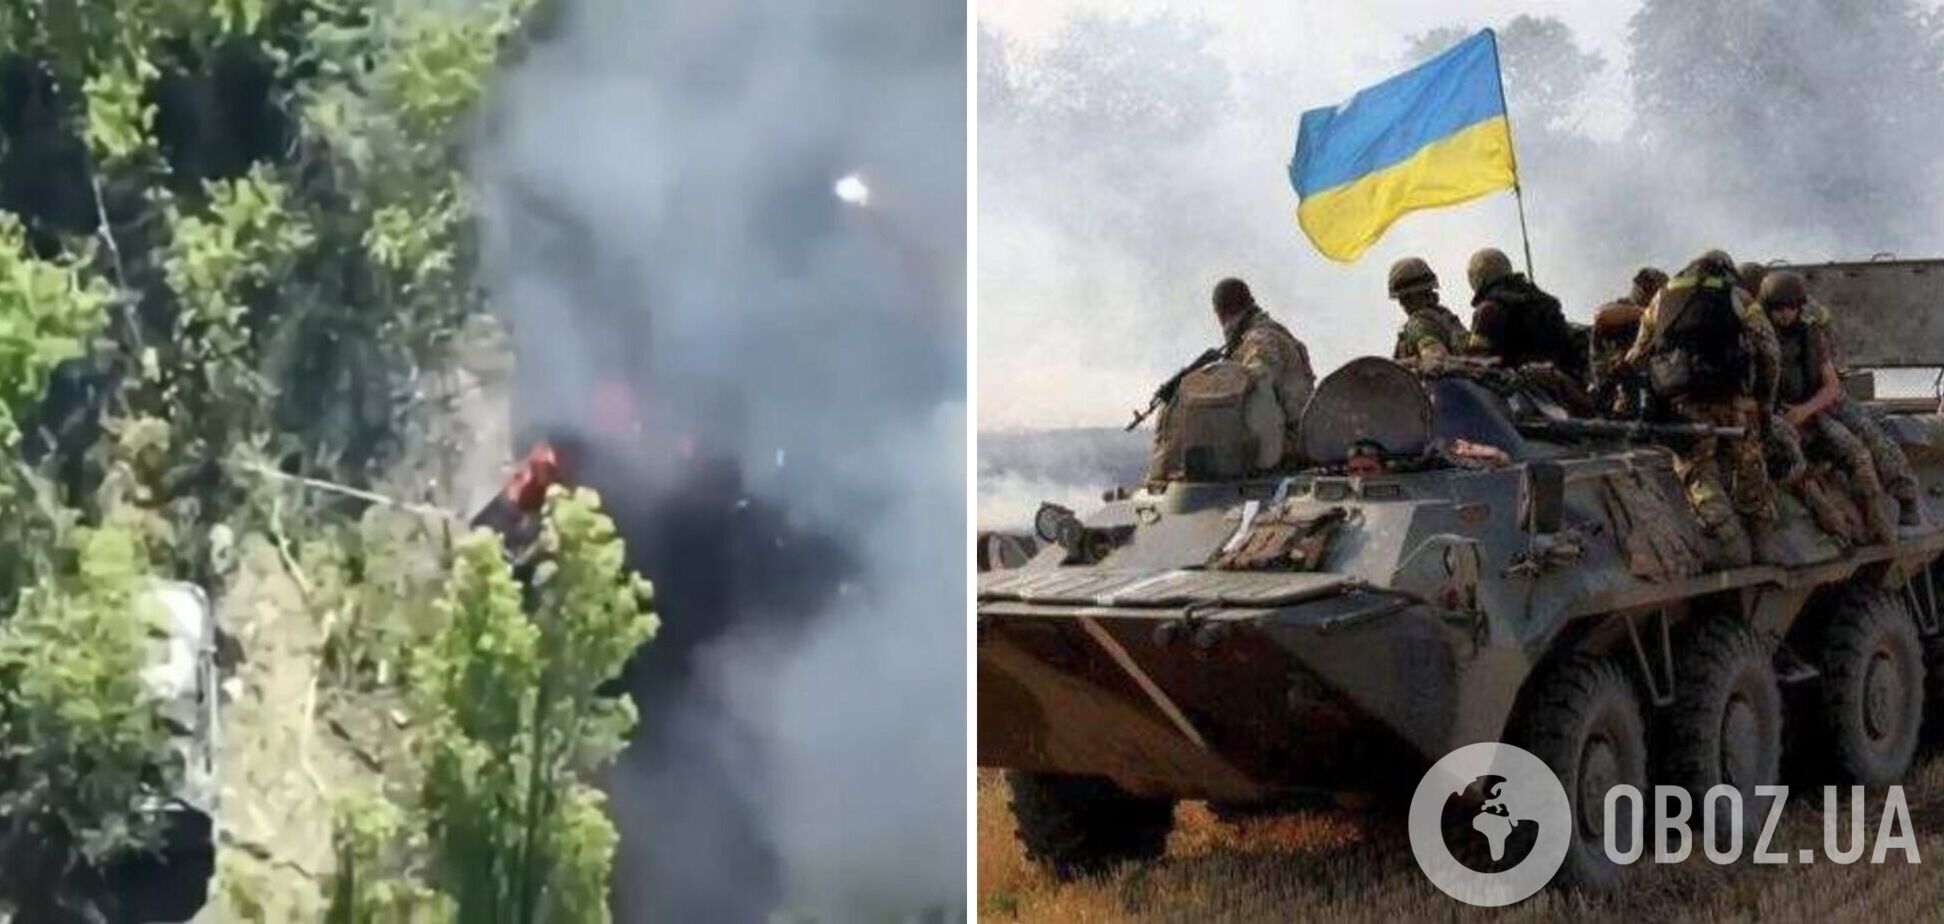 Точно в цель: украинские артиллеристы показали кадры 'работы' по врагу. Видео